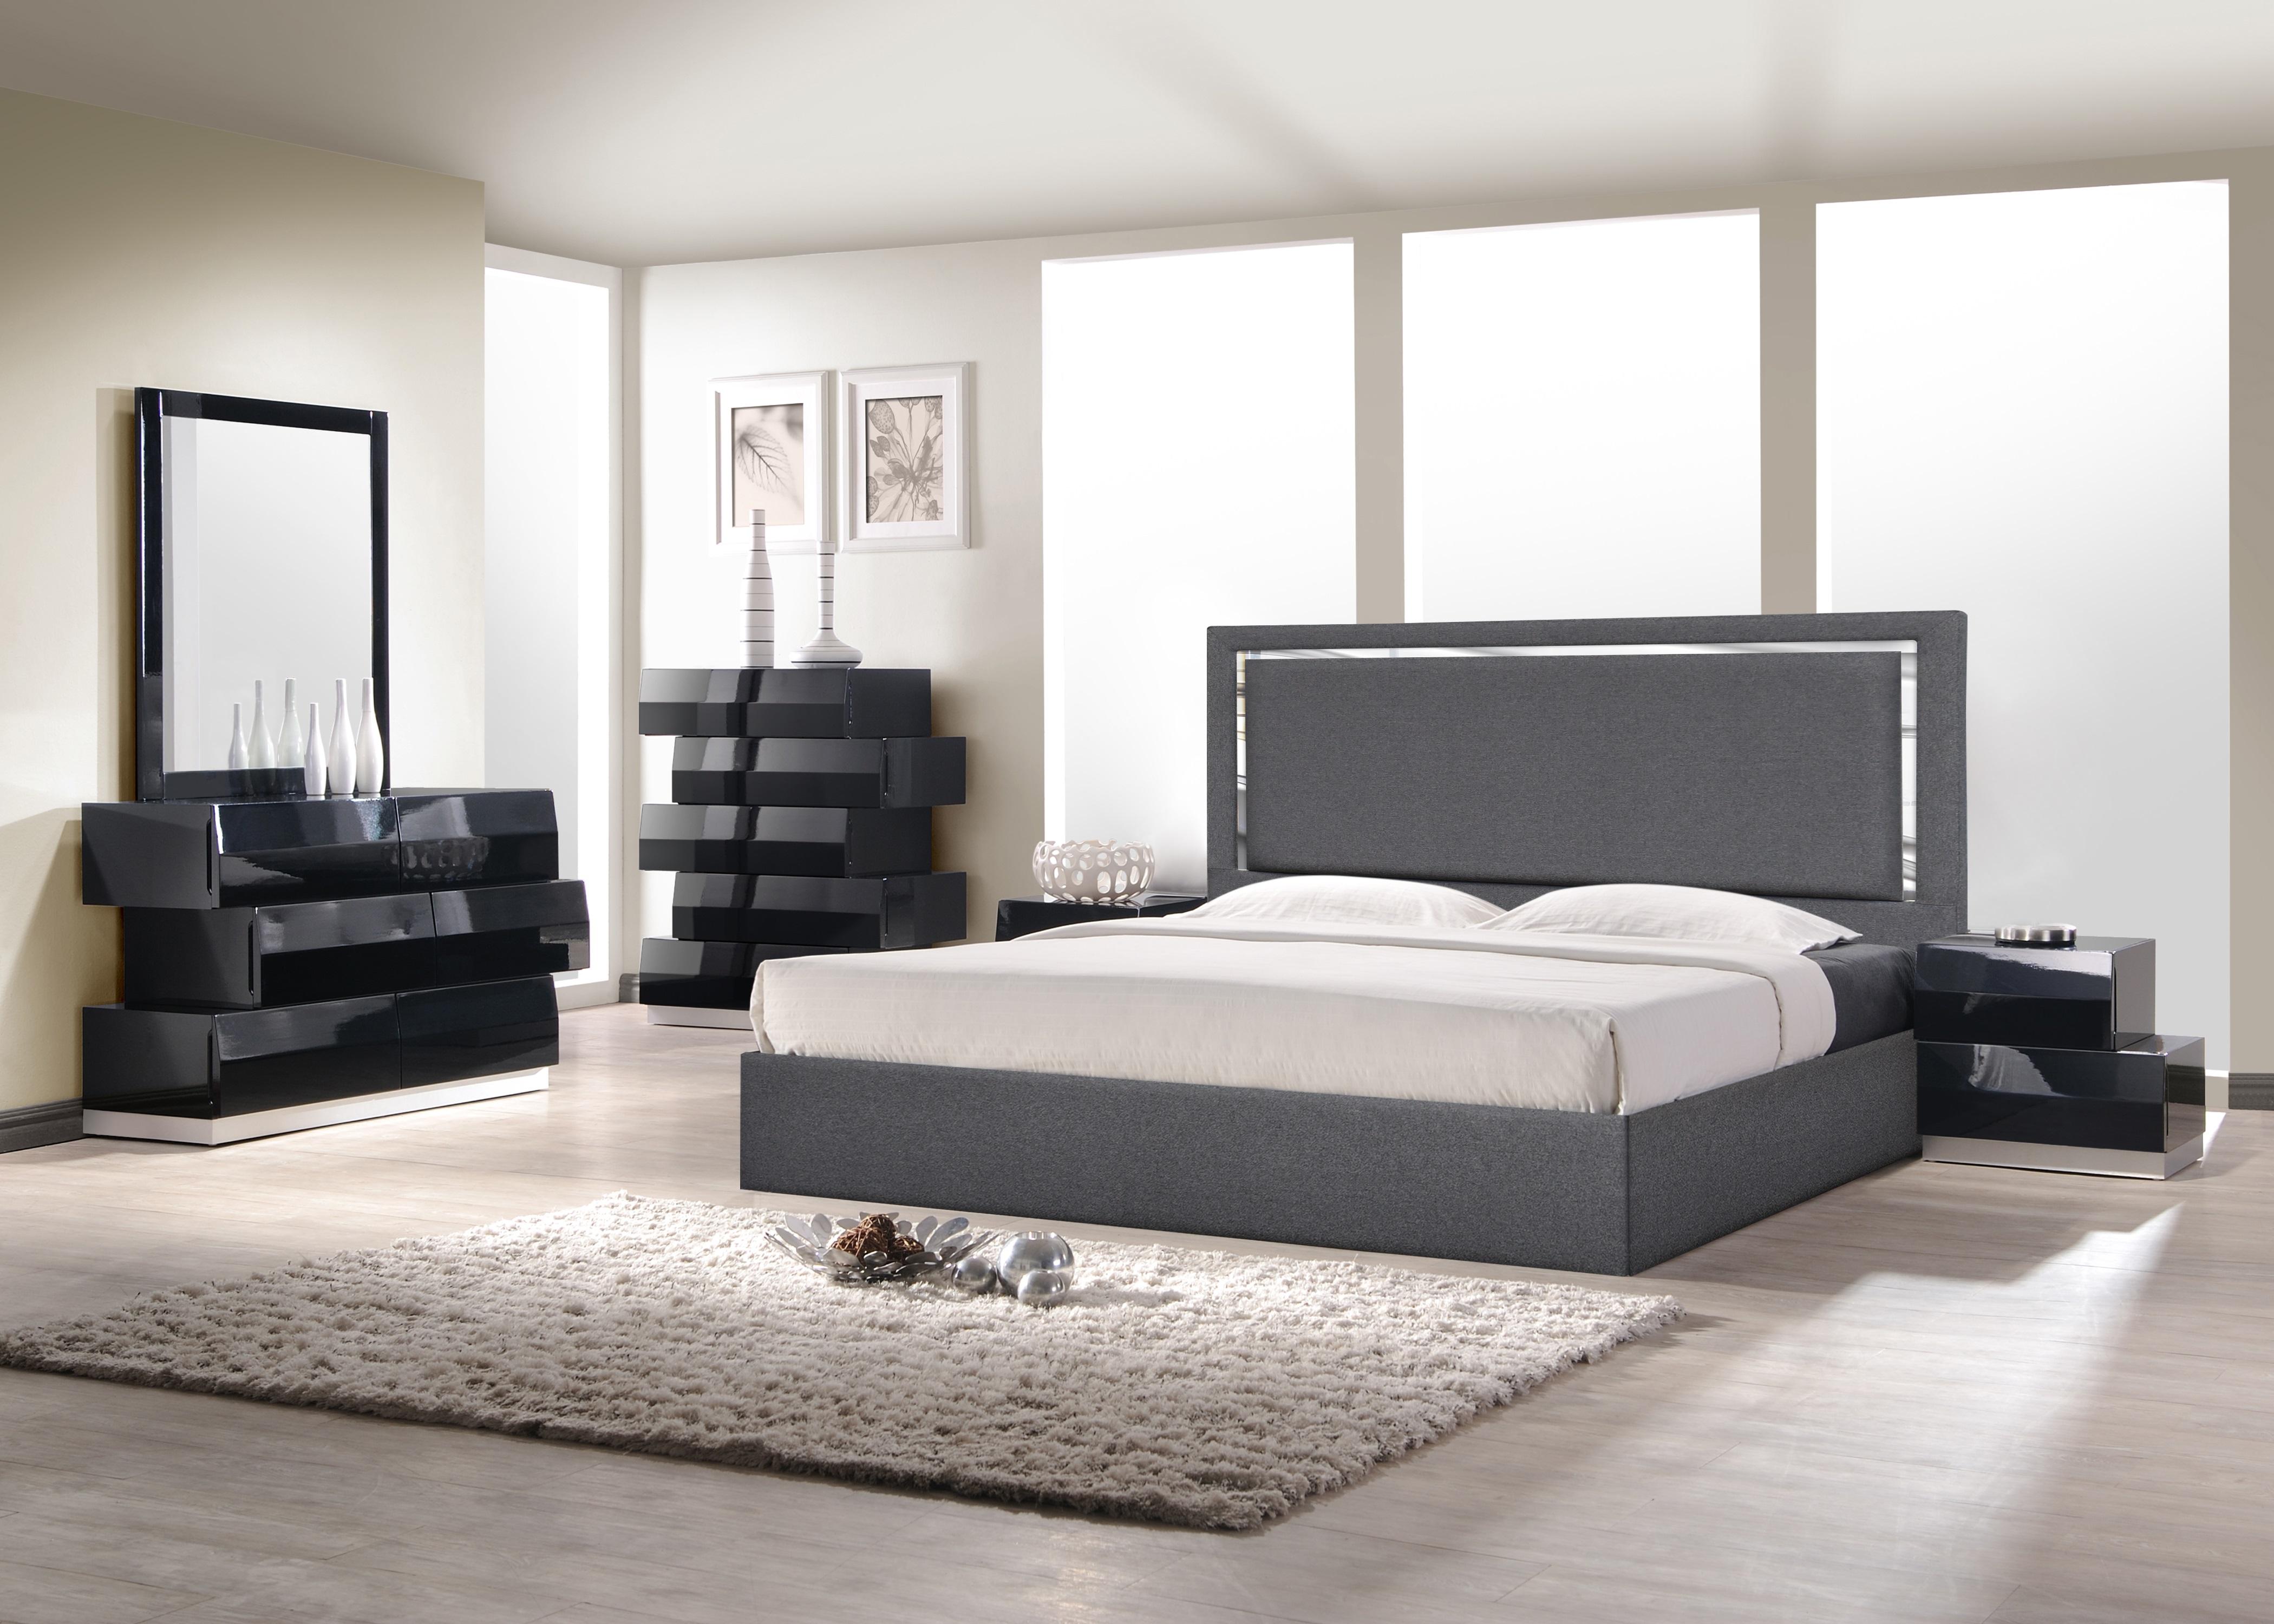 

    
SKU 18740-Q-Bed J&M Furniture Platform Bed
